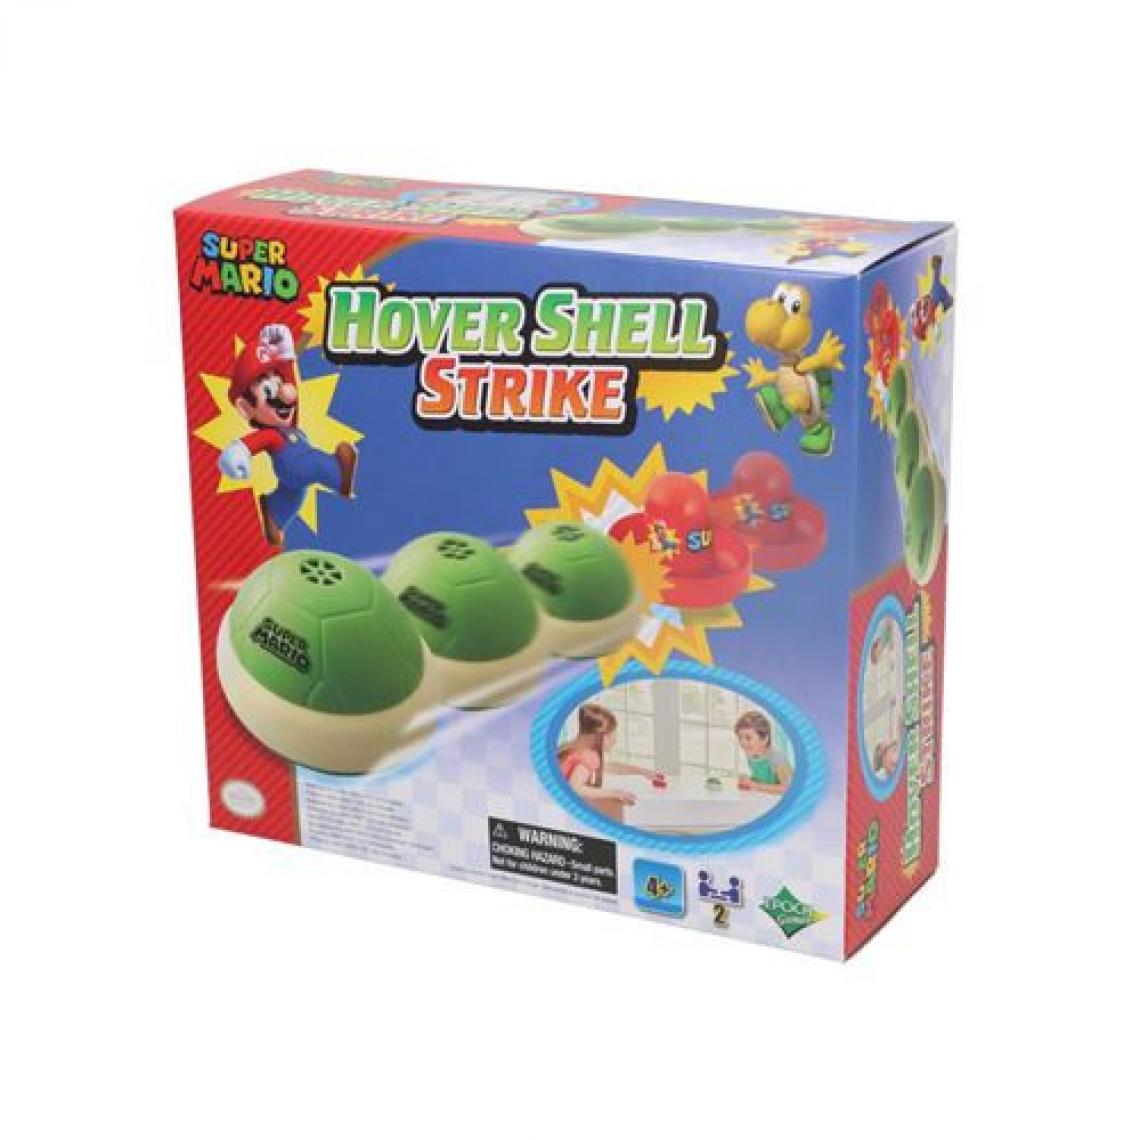 Super Mario - Jeu Super Mario Hover shell strike - Les grands classiques